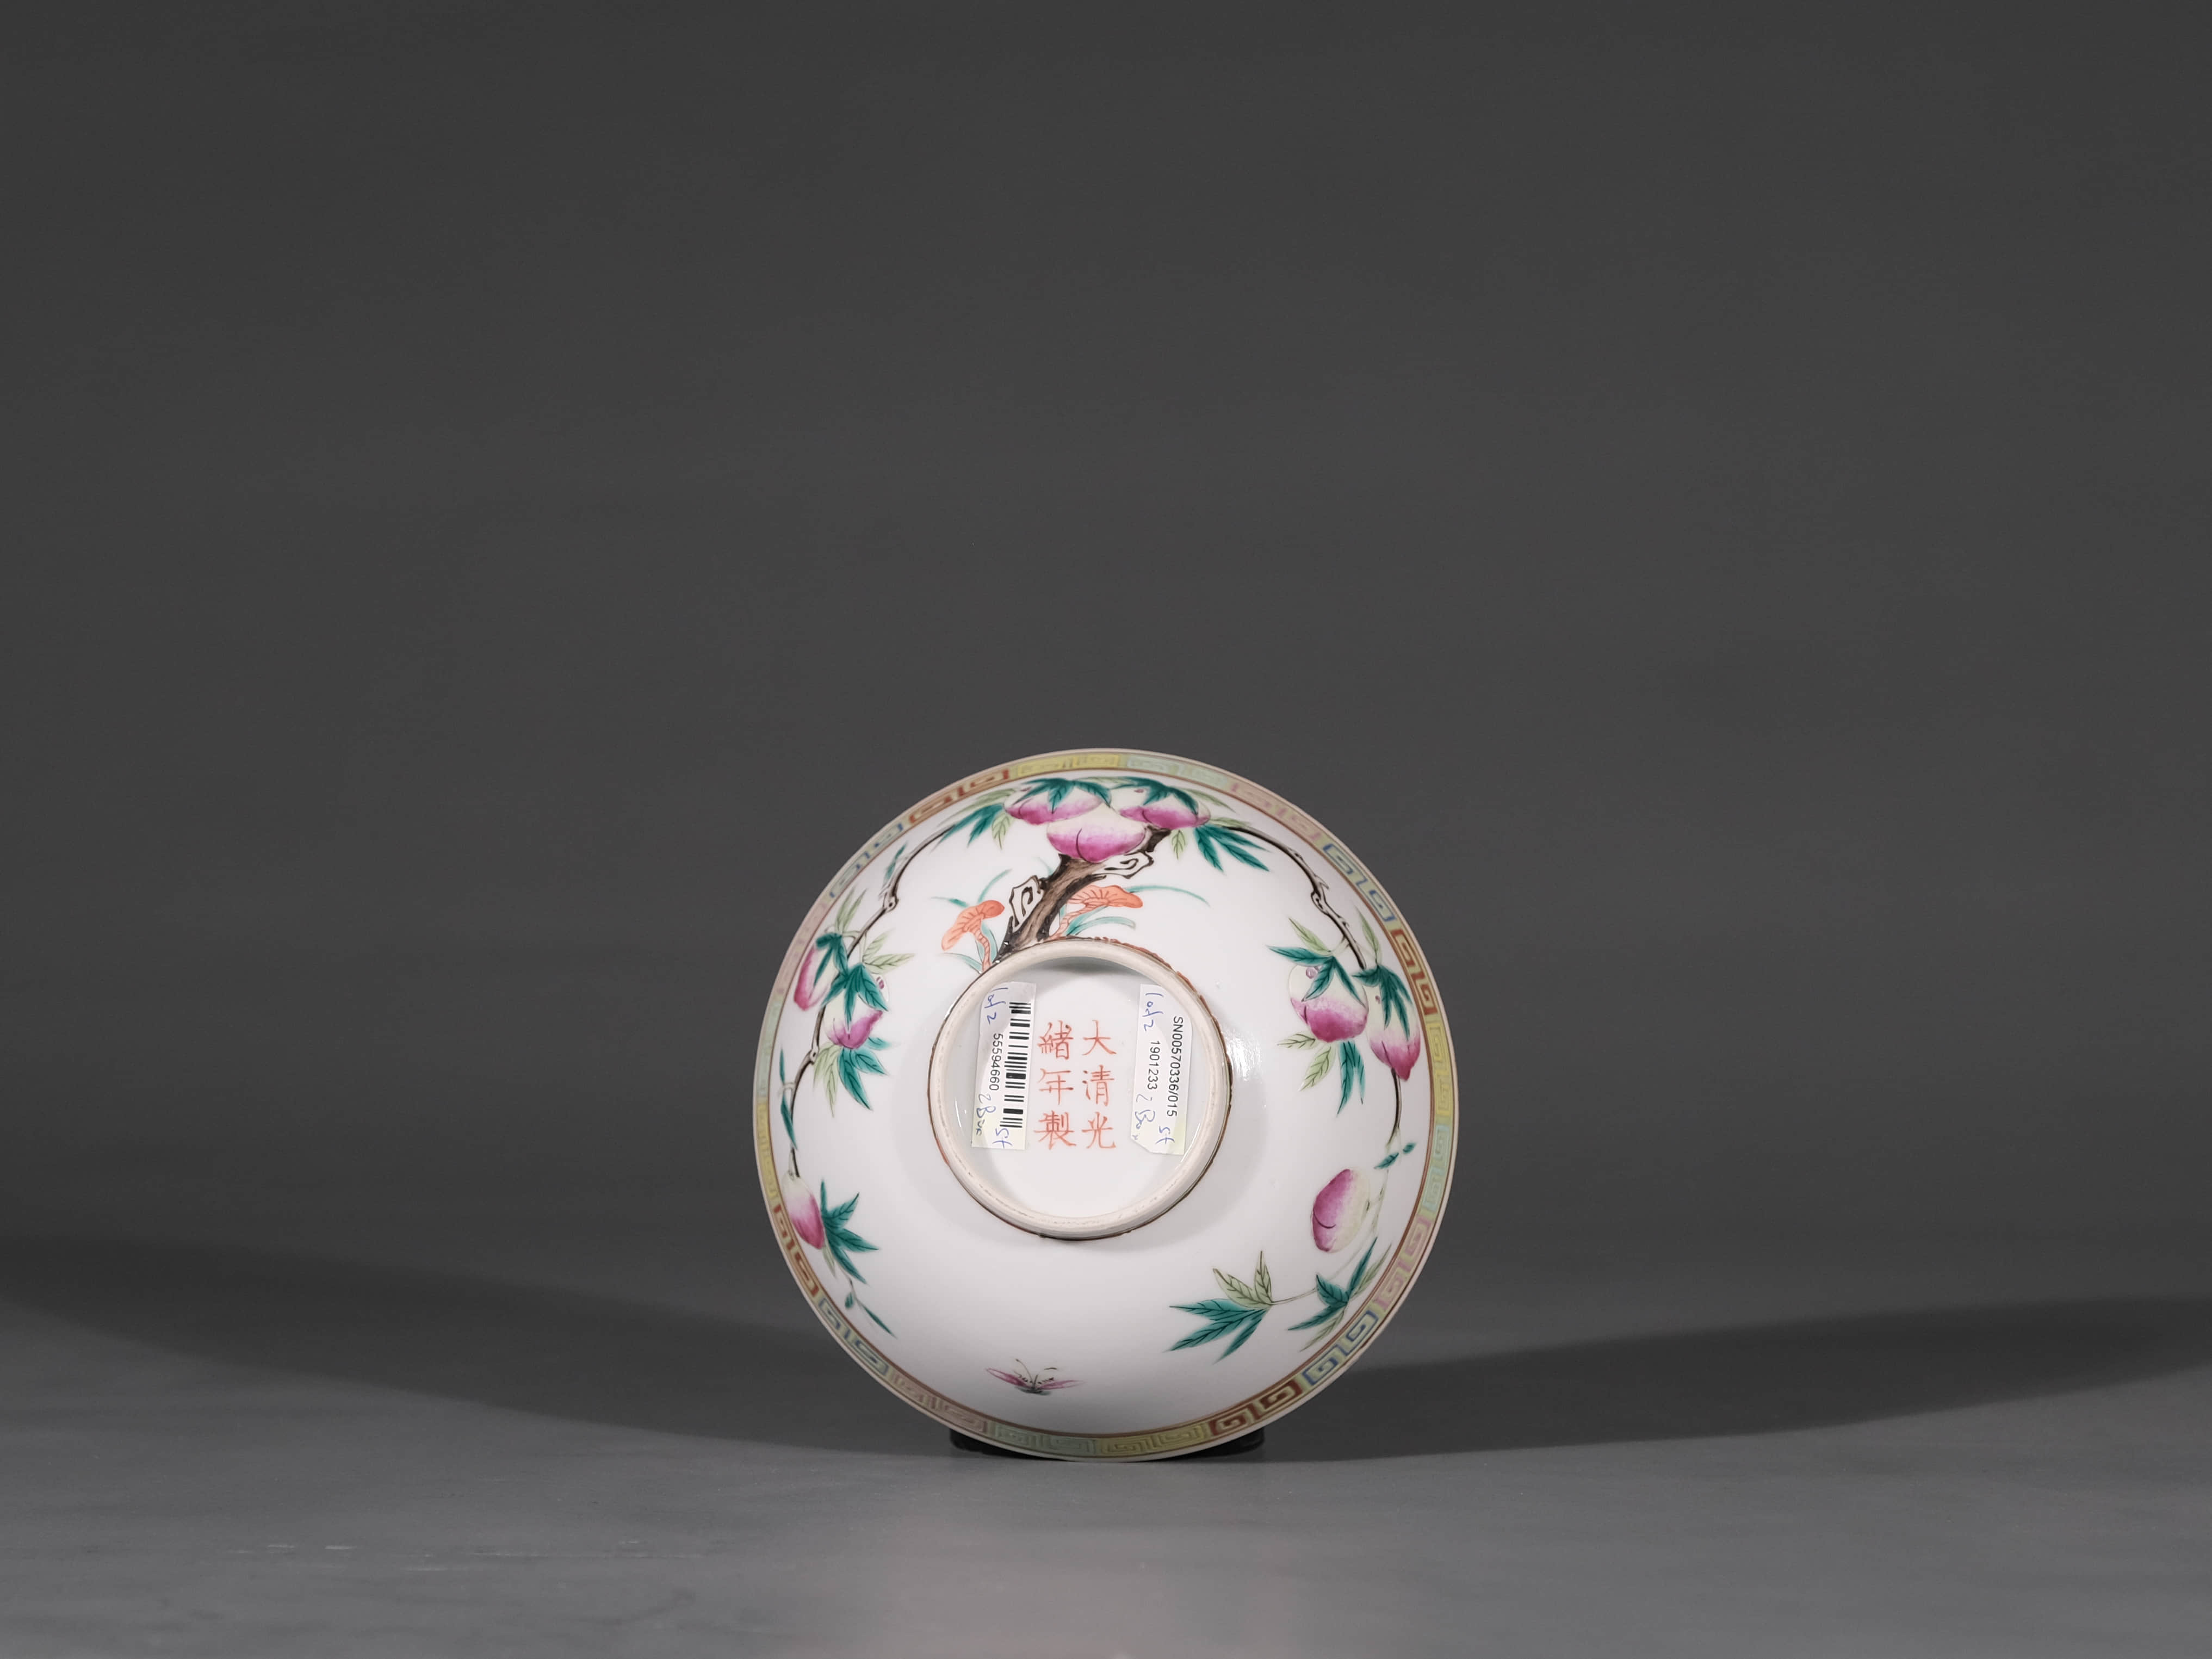 尺寸d14cm拍品描述粉彩九桃图创始于雍正时期,官窑瓷器绘此一纹饰者